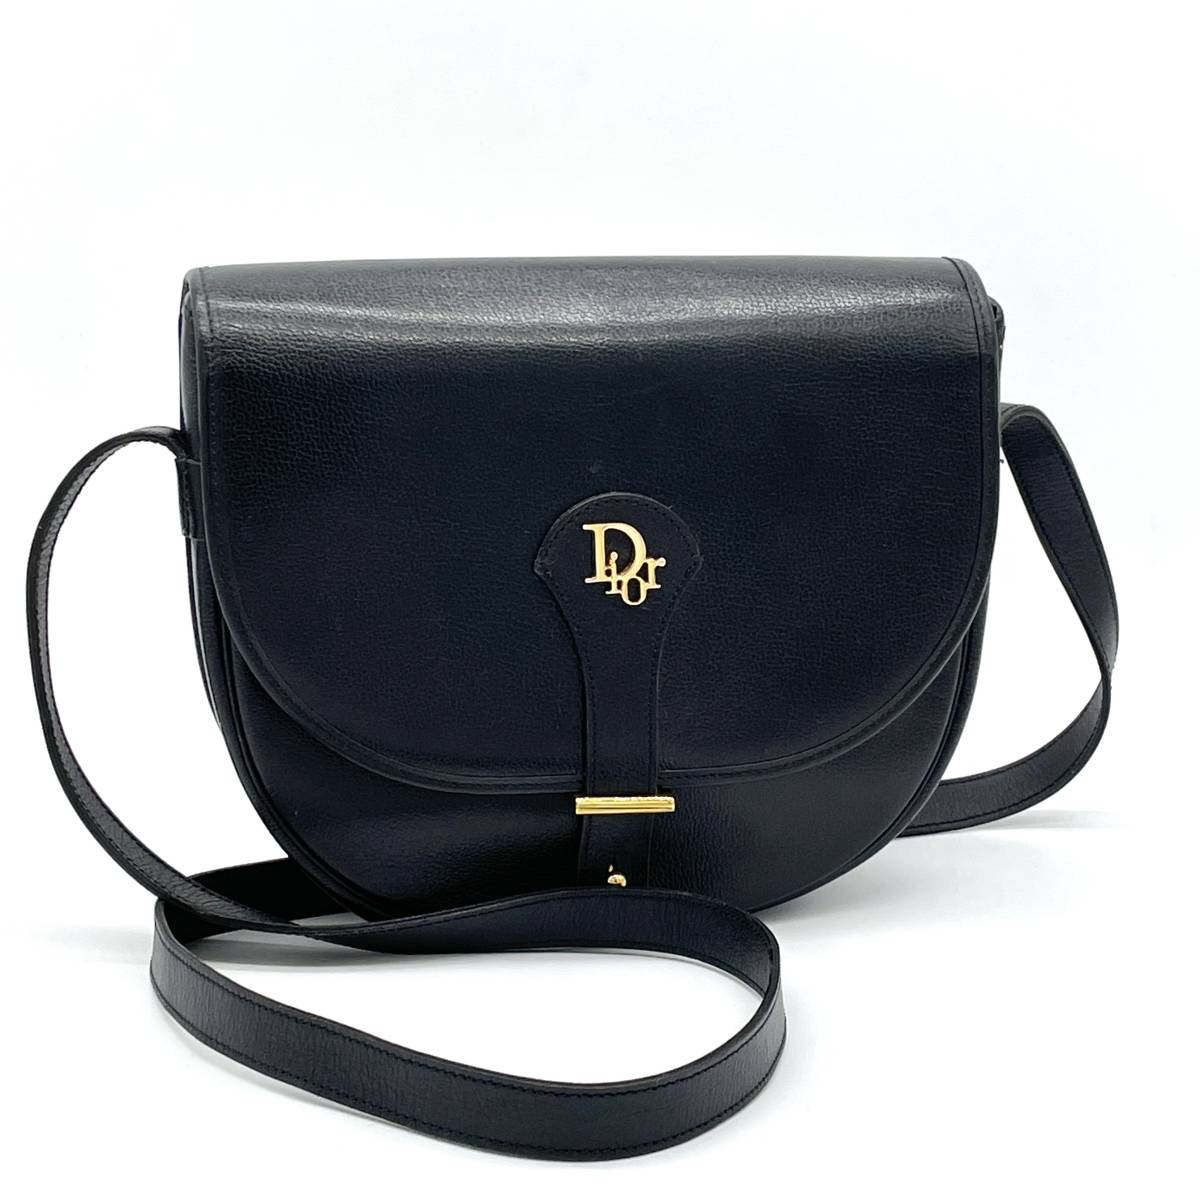 1円 美品 Christian Dior クリスチャンディオール カーフレザー ブラック 黒 ショルダーバッグ 斜めがけ Diorロゴ ゴールド金具